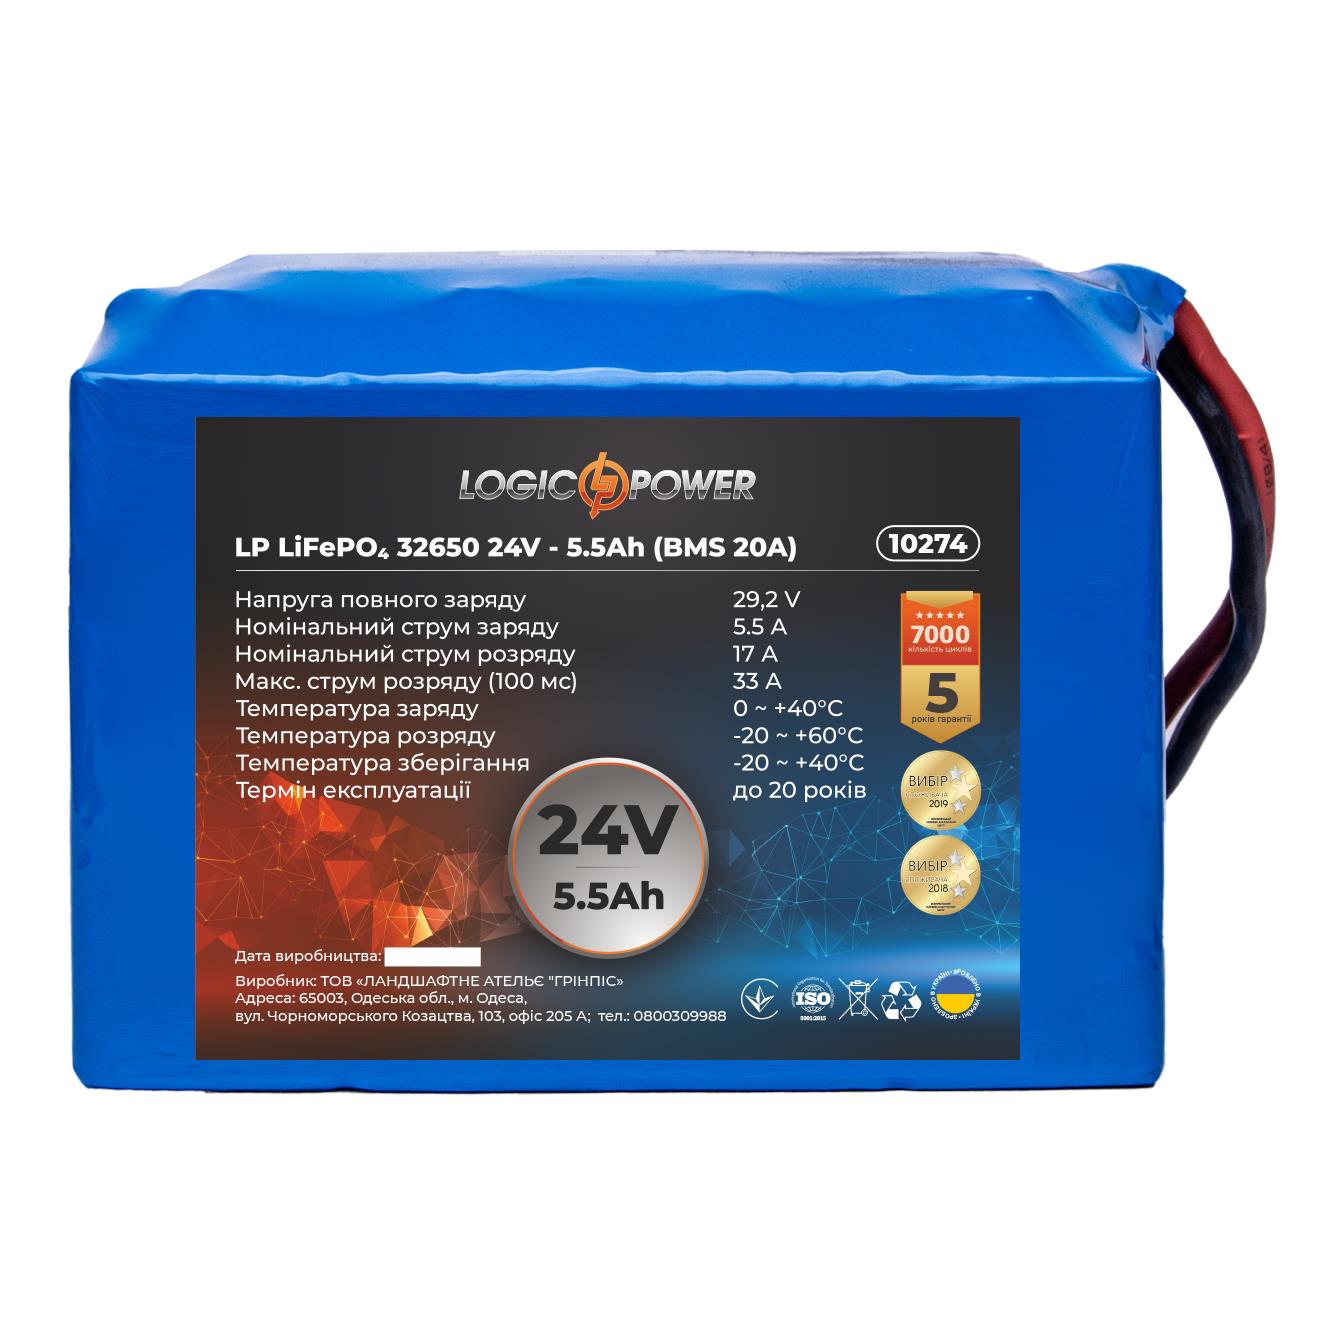 Аккумулятор литий-железо-фосфатный LogicPower LP LiFePO4 32650 24V - 5.5 Ah (BMS 20A) (10274) в интернет-магазине, главное фото